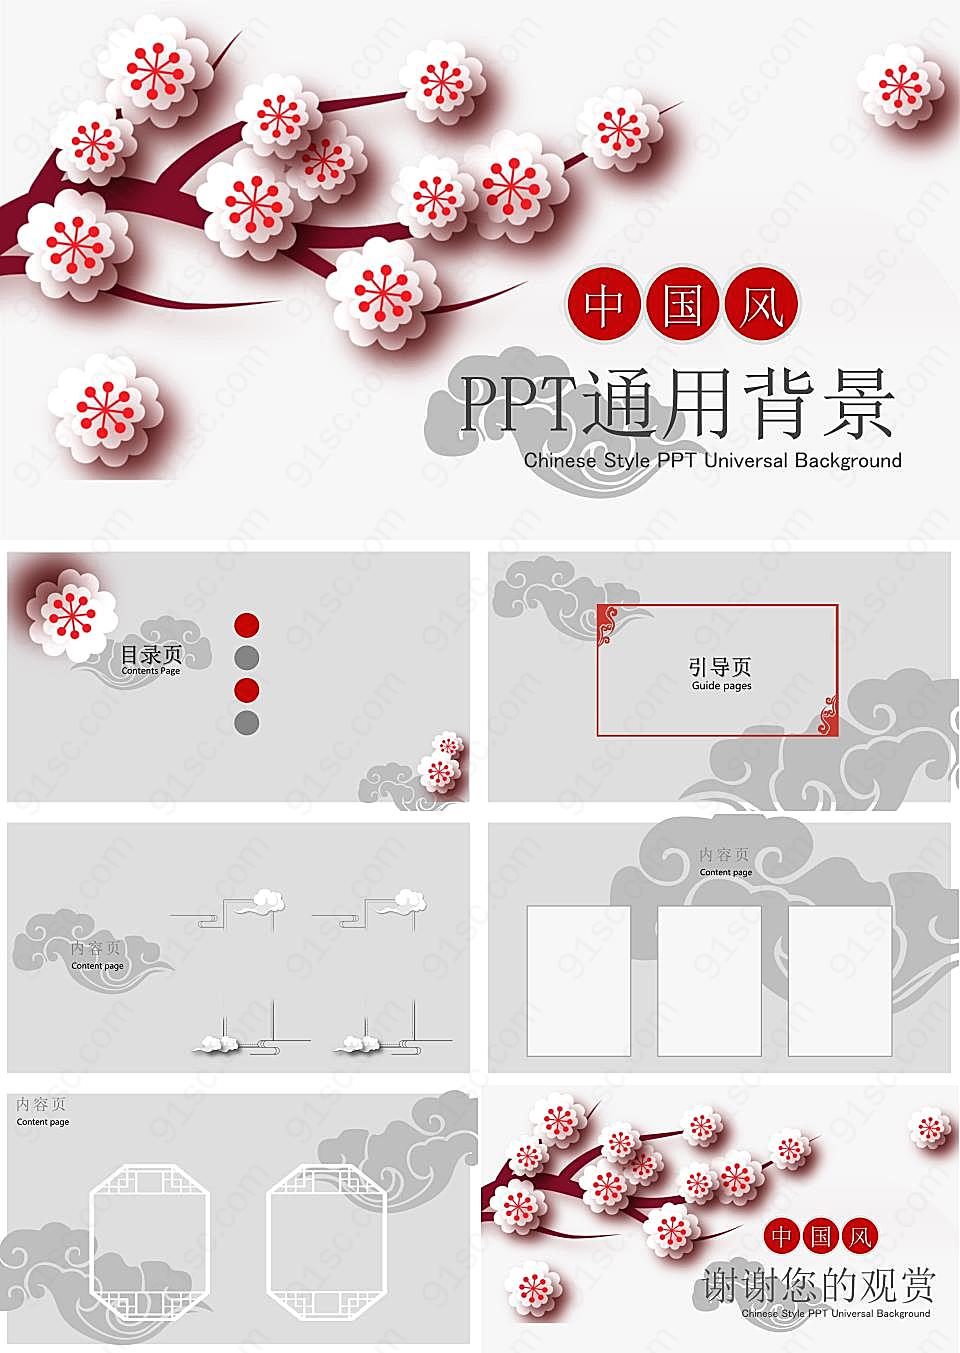 中国风ppt通用背景PPT模板